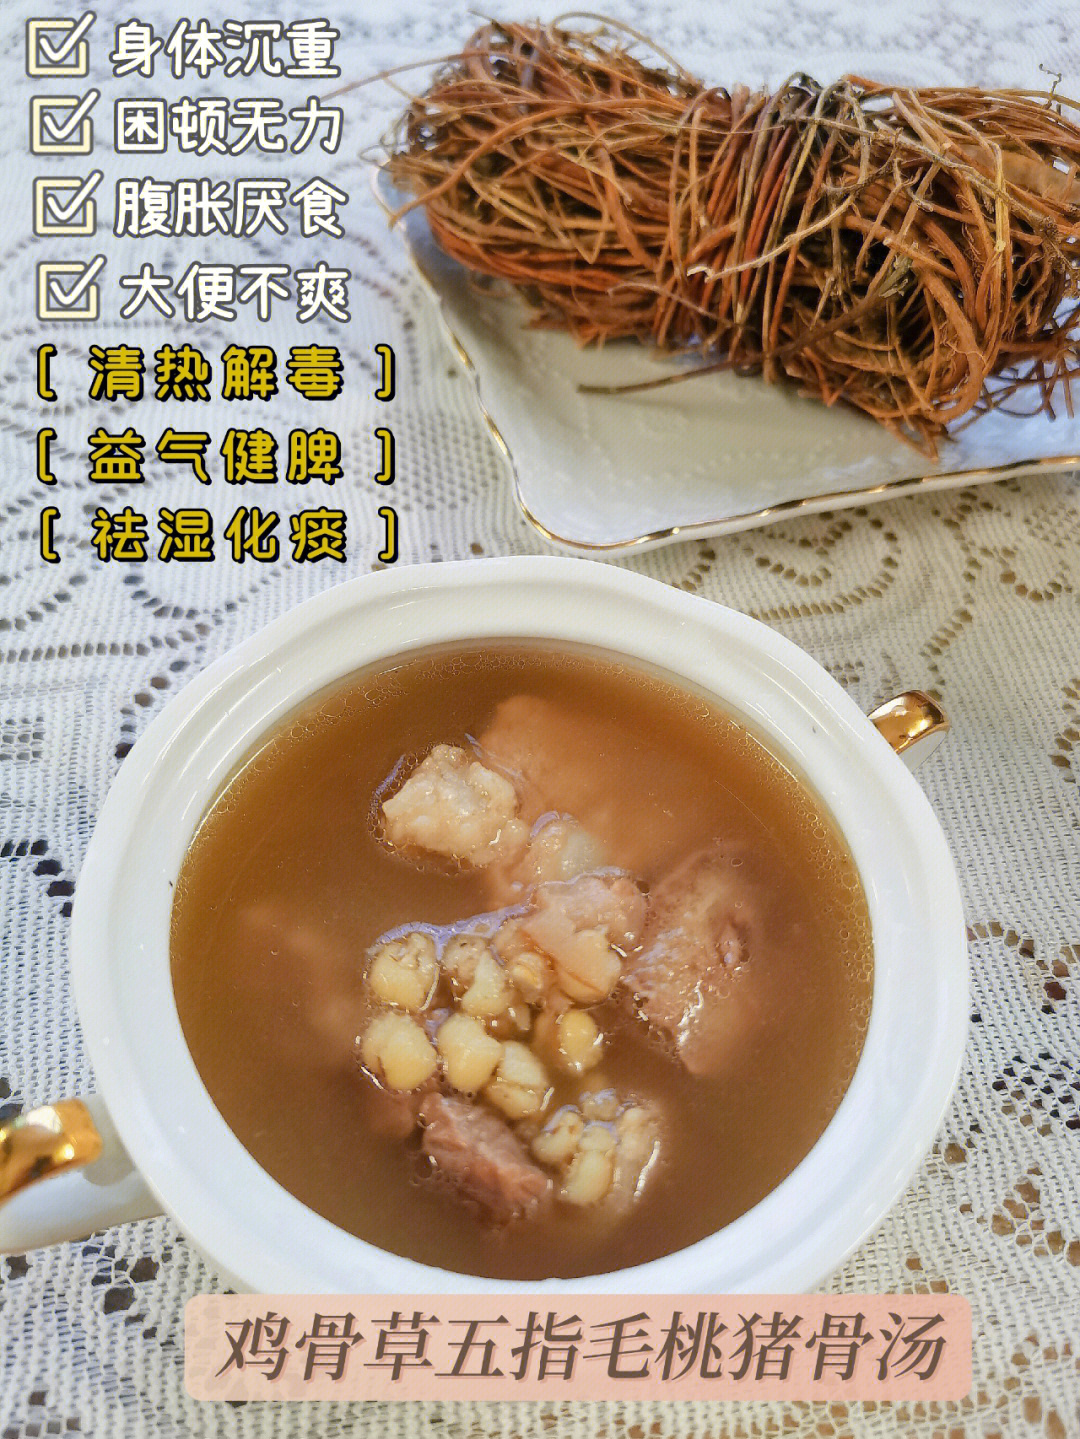 广东五指毛桃煲汤法图片